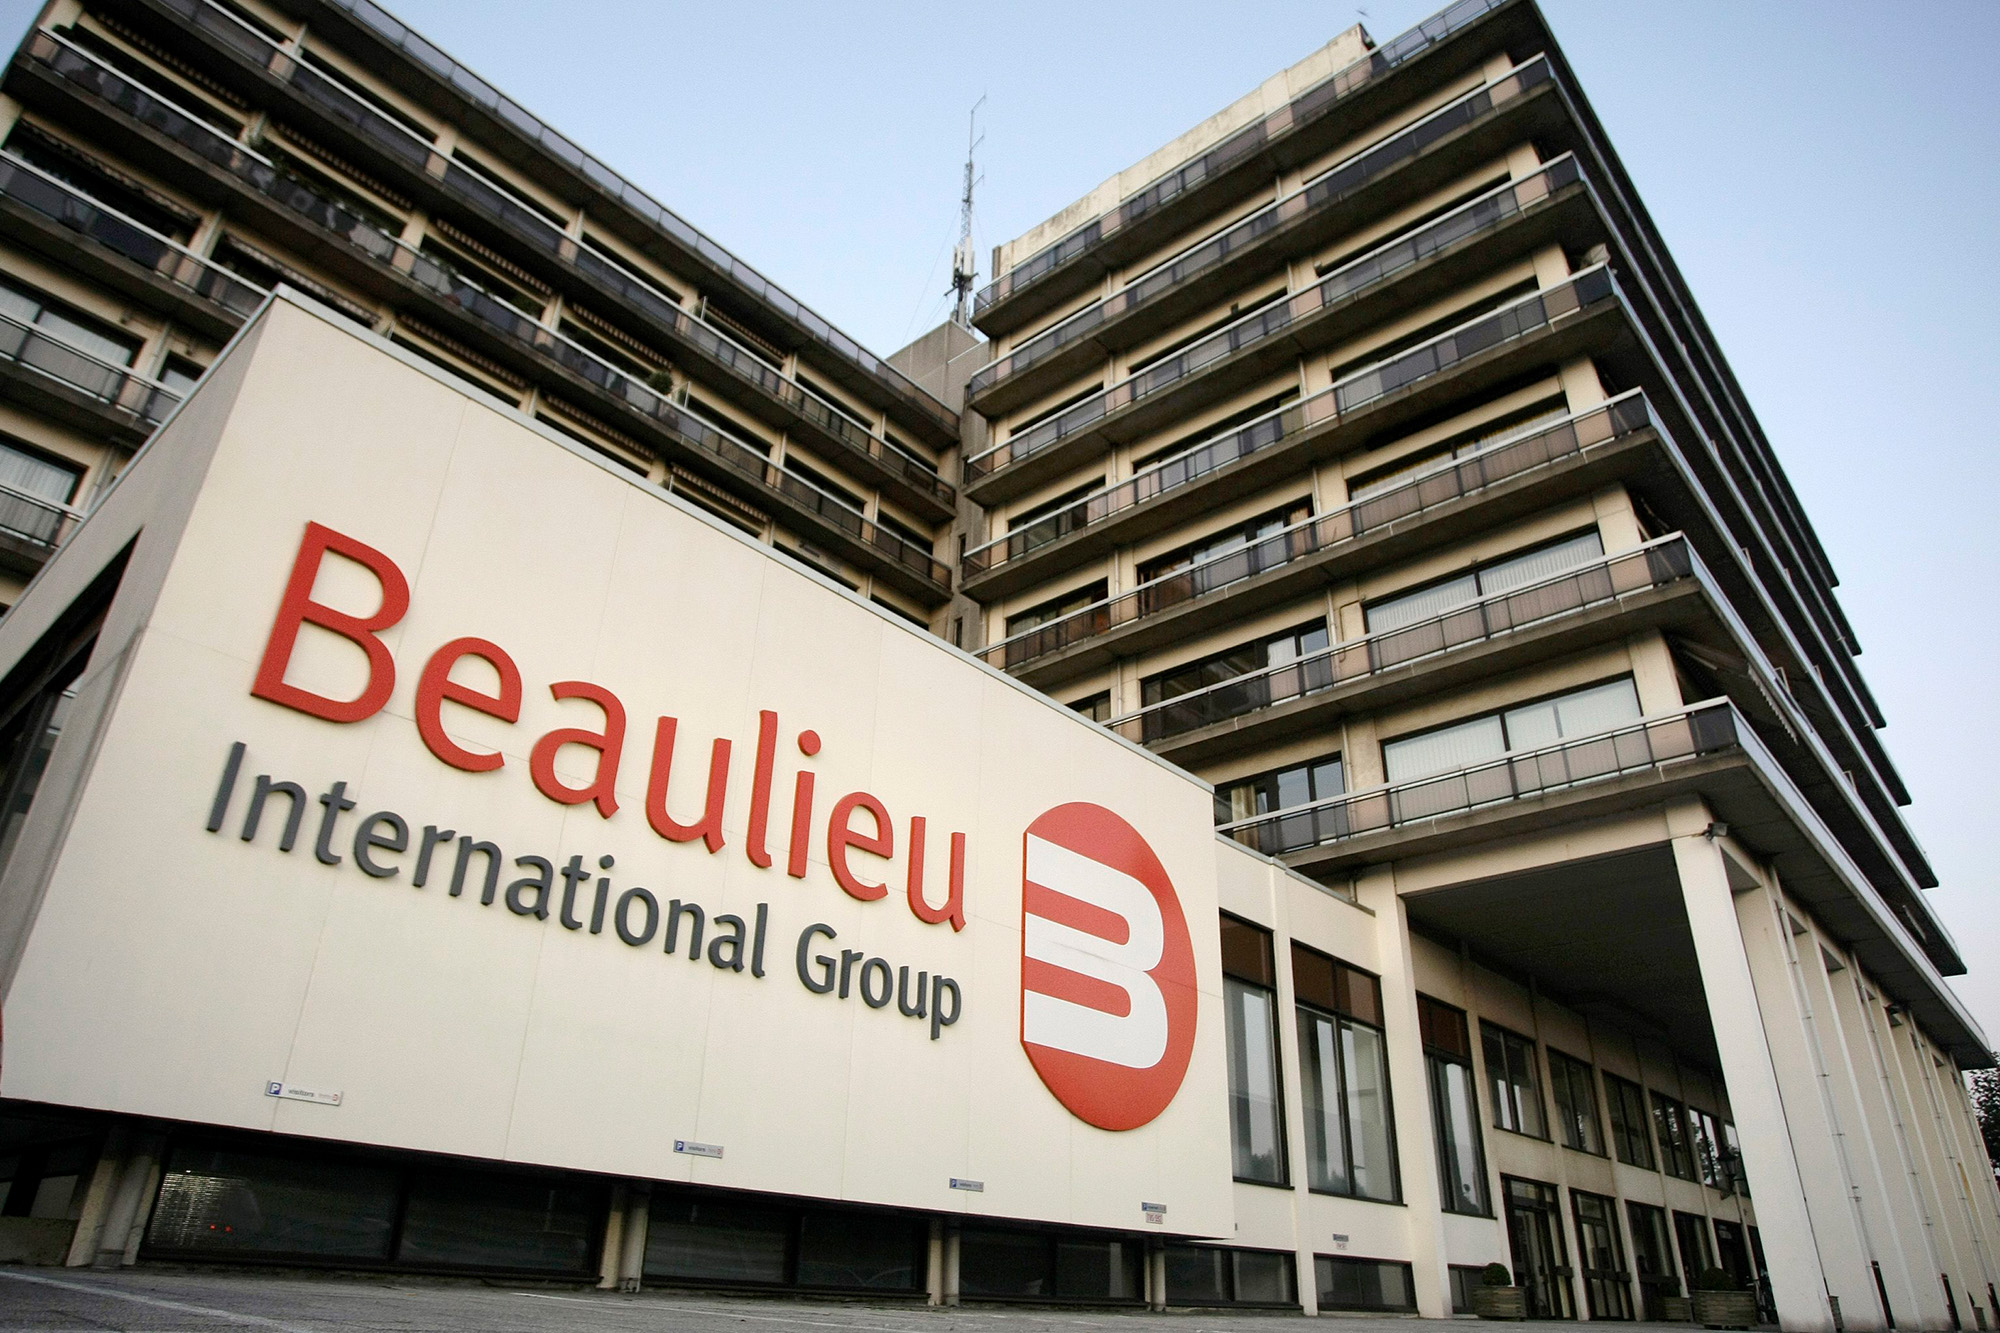 Standort der Beaulieu International Group in Waregem